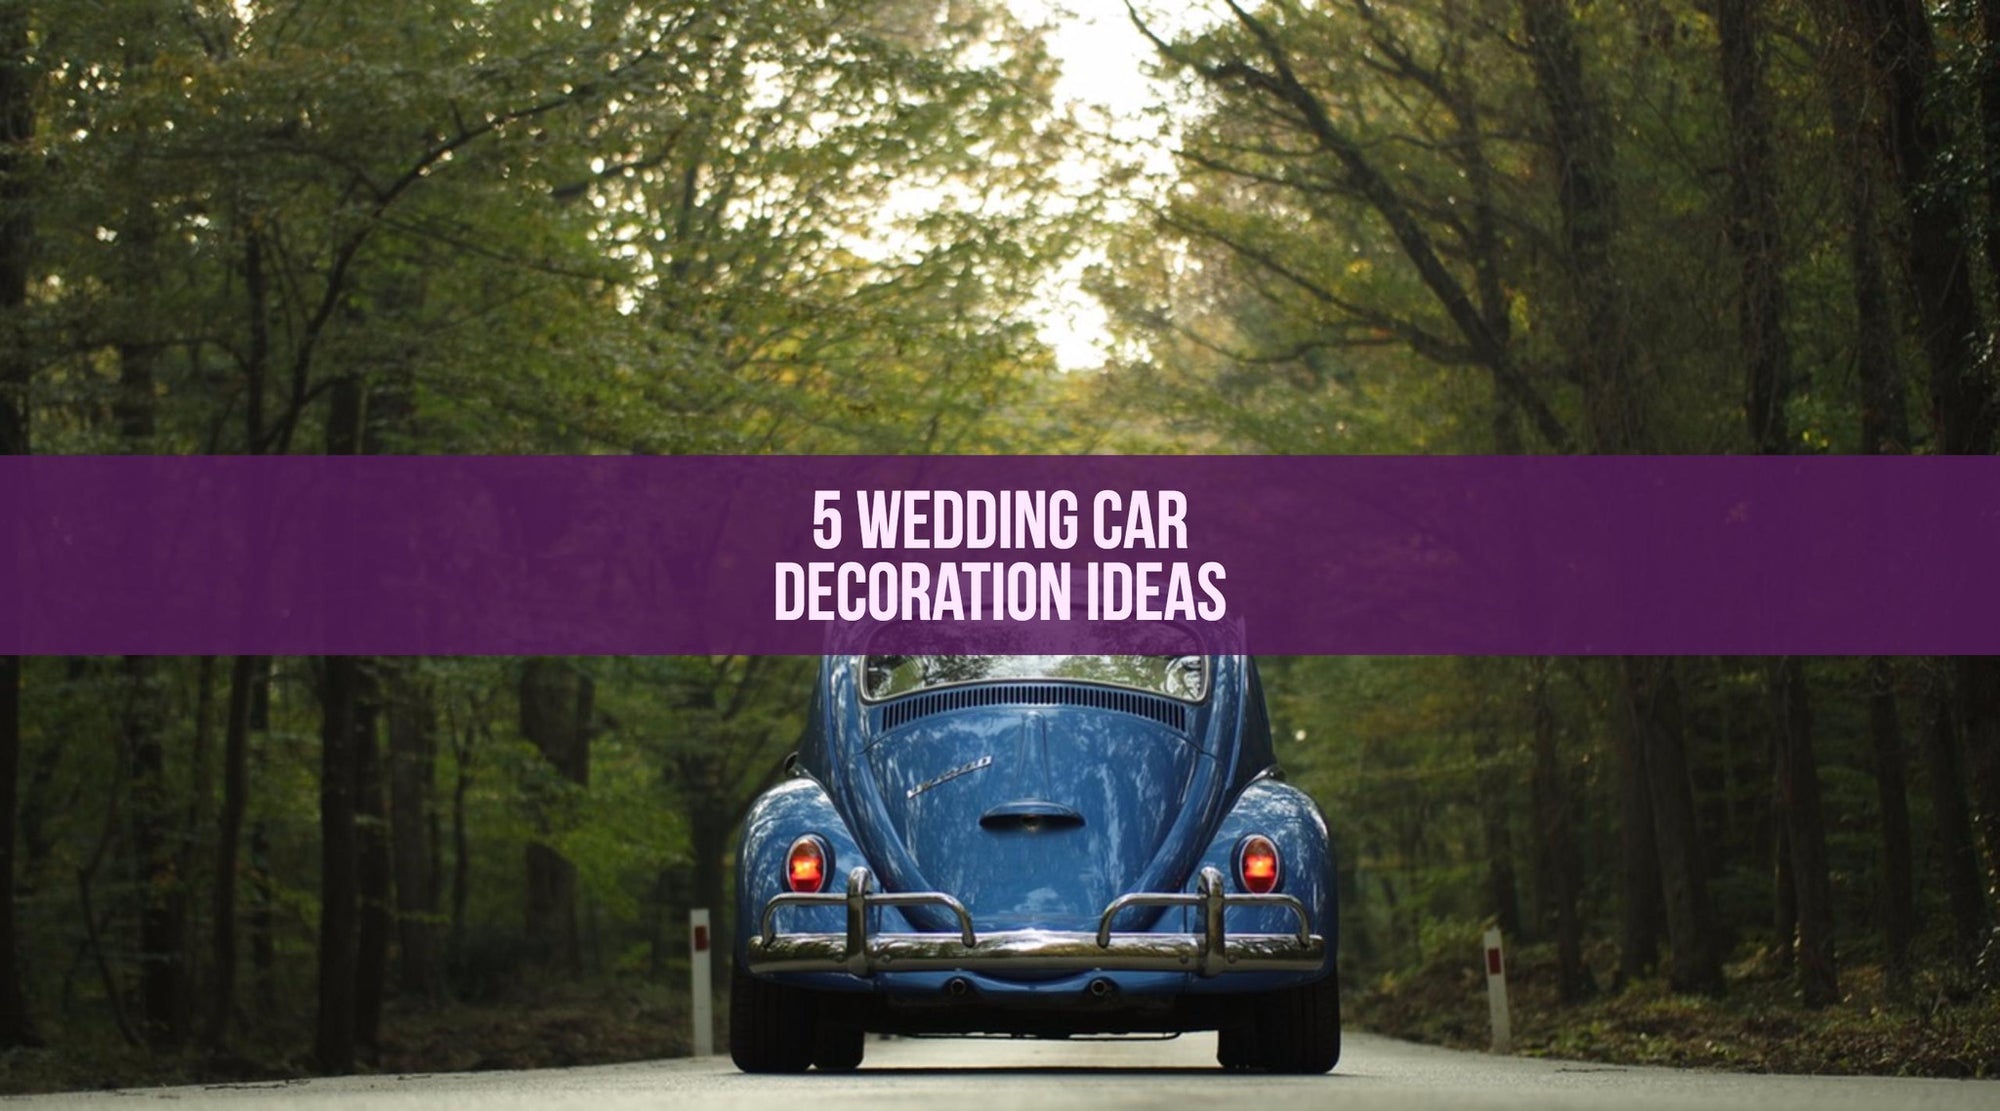 5 Wedding Car Decoration Ideas